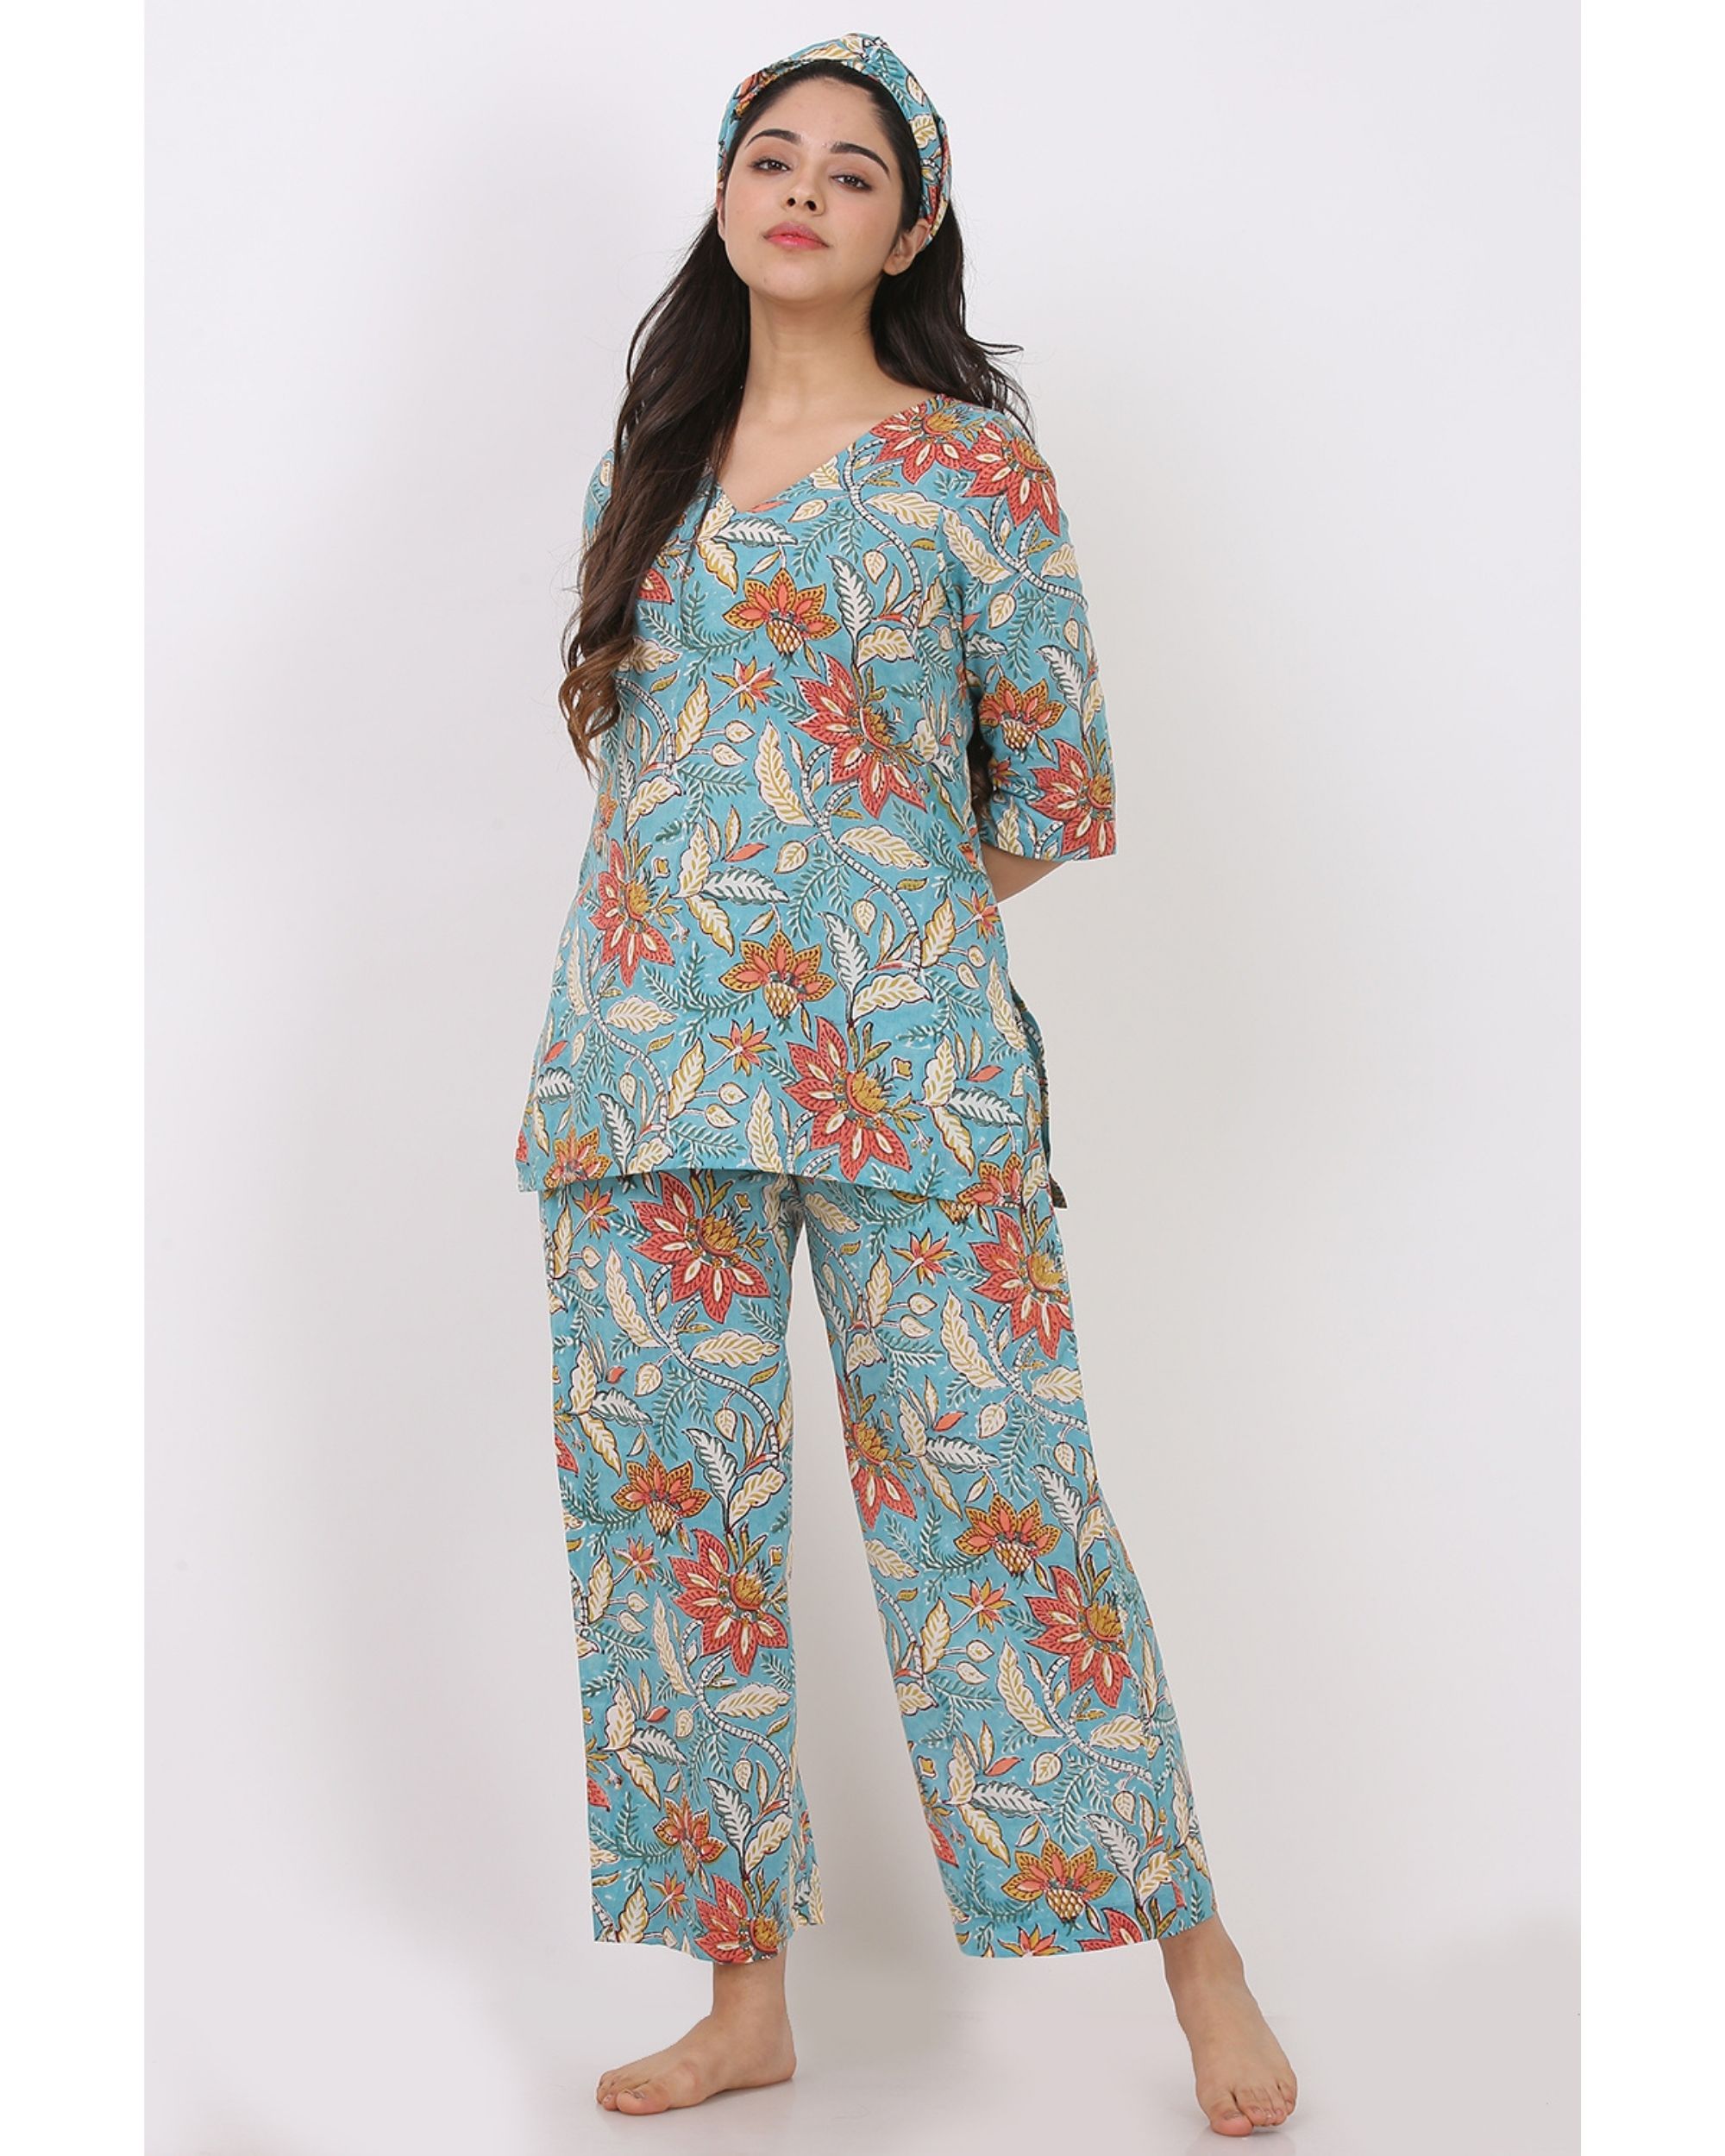 Summer blue short printed kurta and pyjama with hair band - set of three